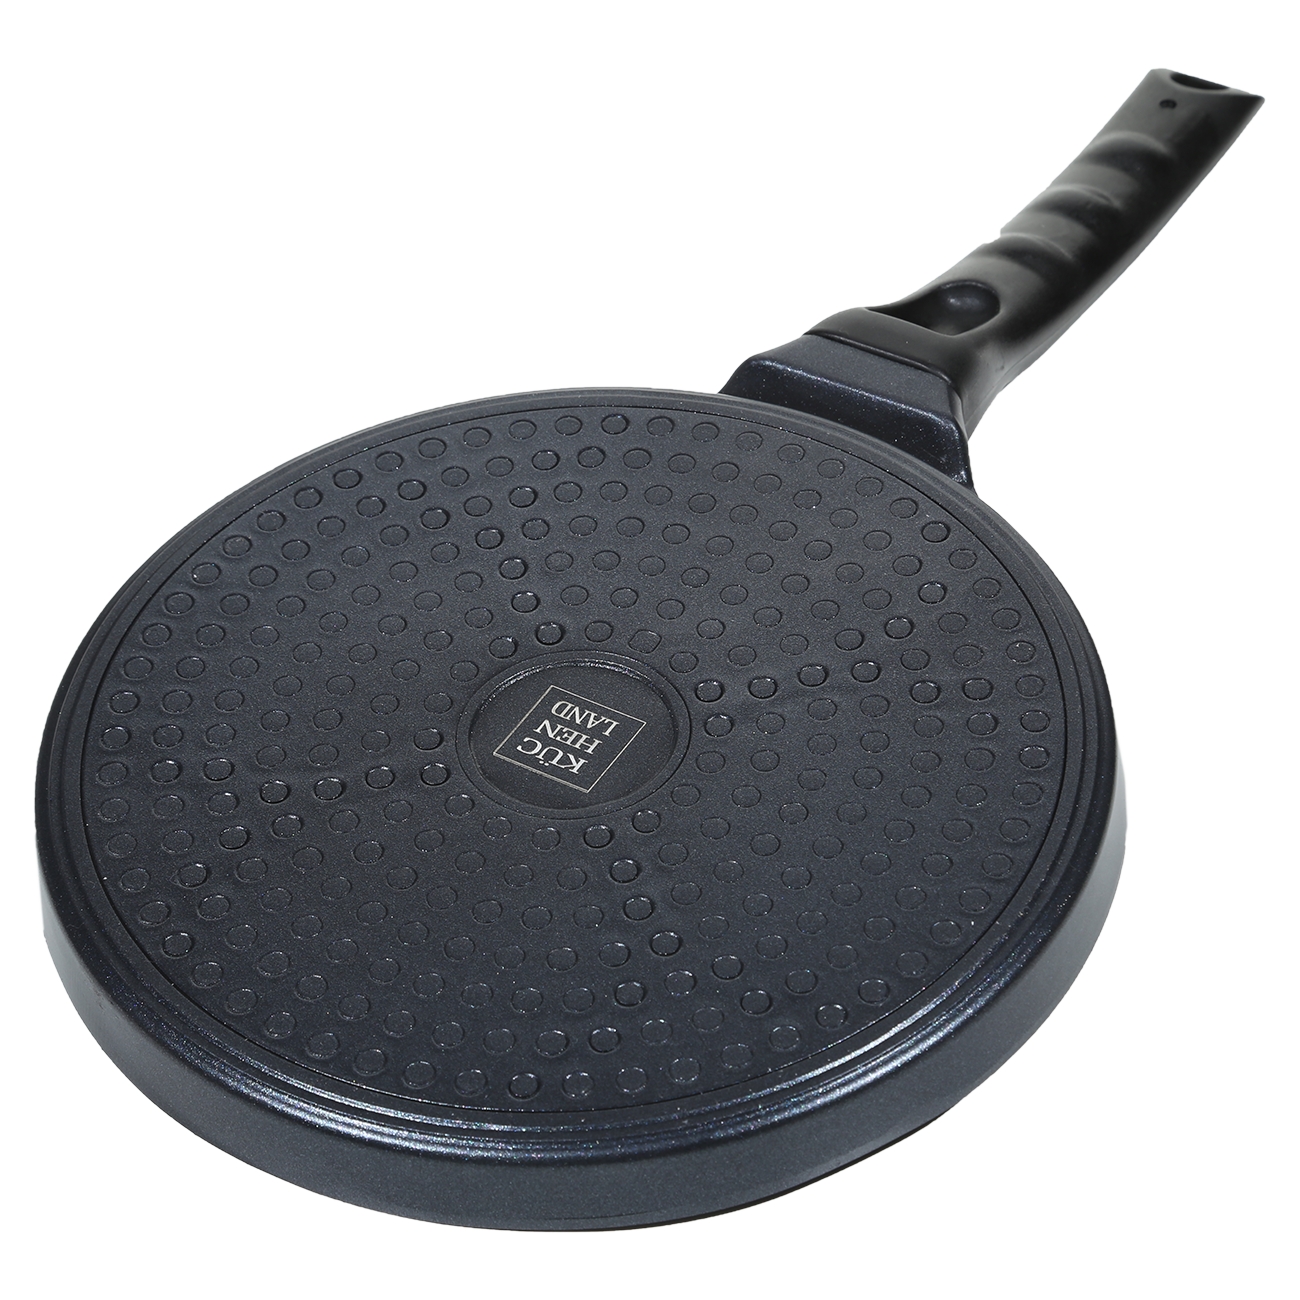 Egg and pancake pan, 21 cm, 4 otd, coated, aluminum, Smile, Action изображение № 3